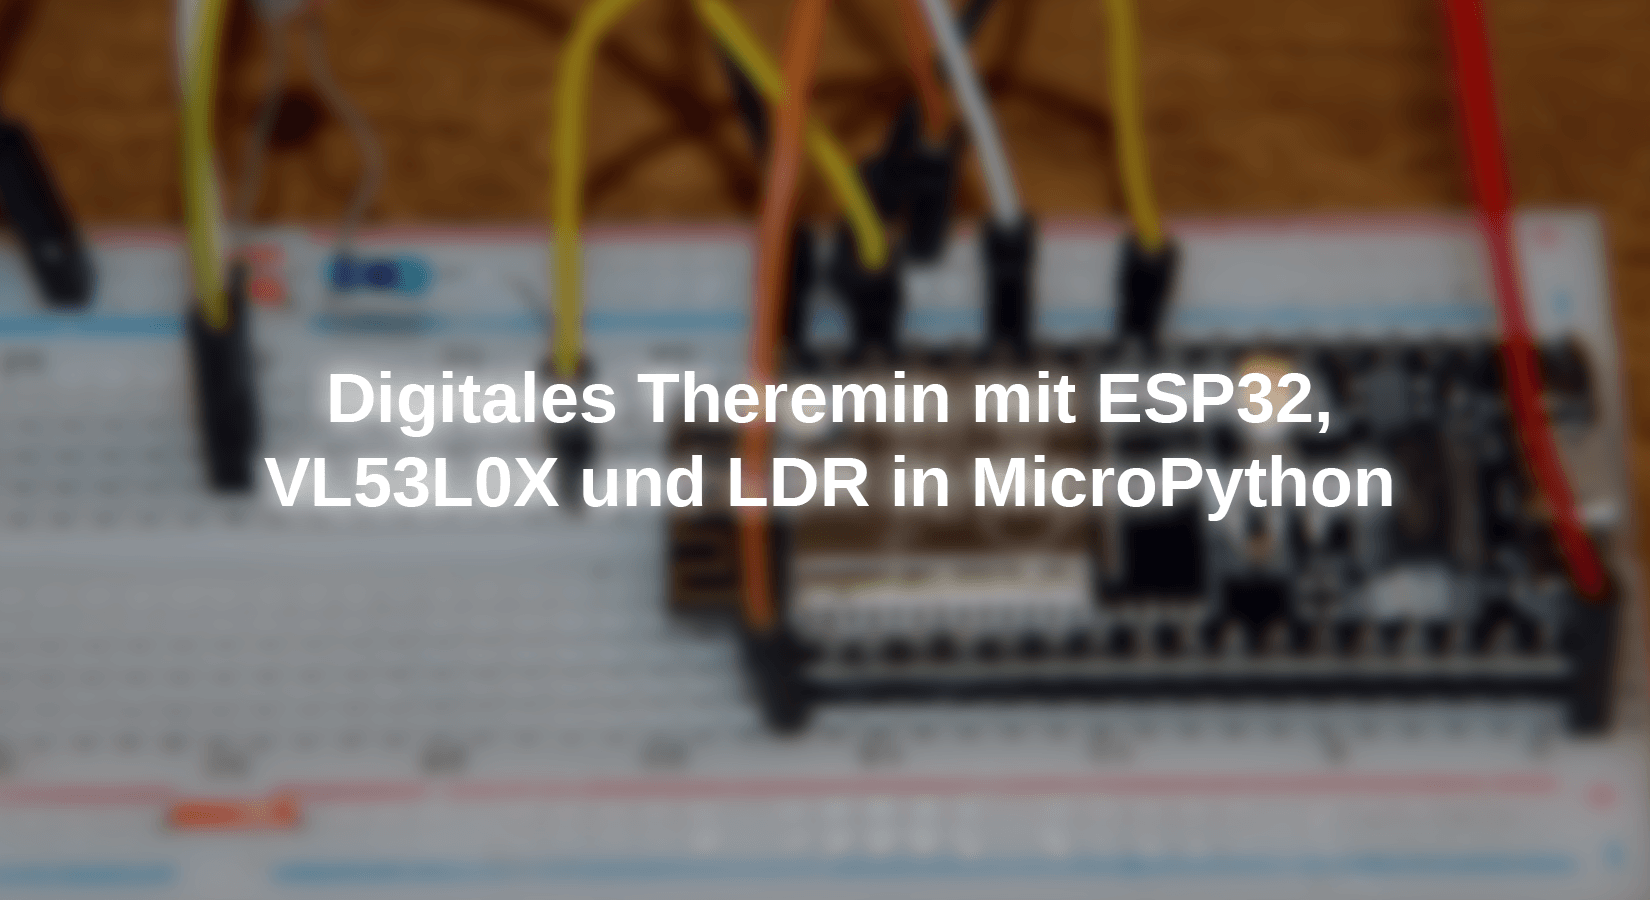 Digitales Theremin mit ESP32, VL53L0X und LDR in MicroPython - AZ-Delivery